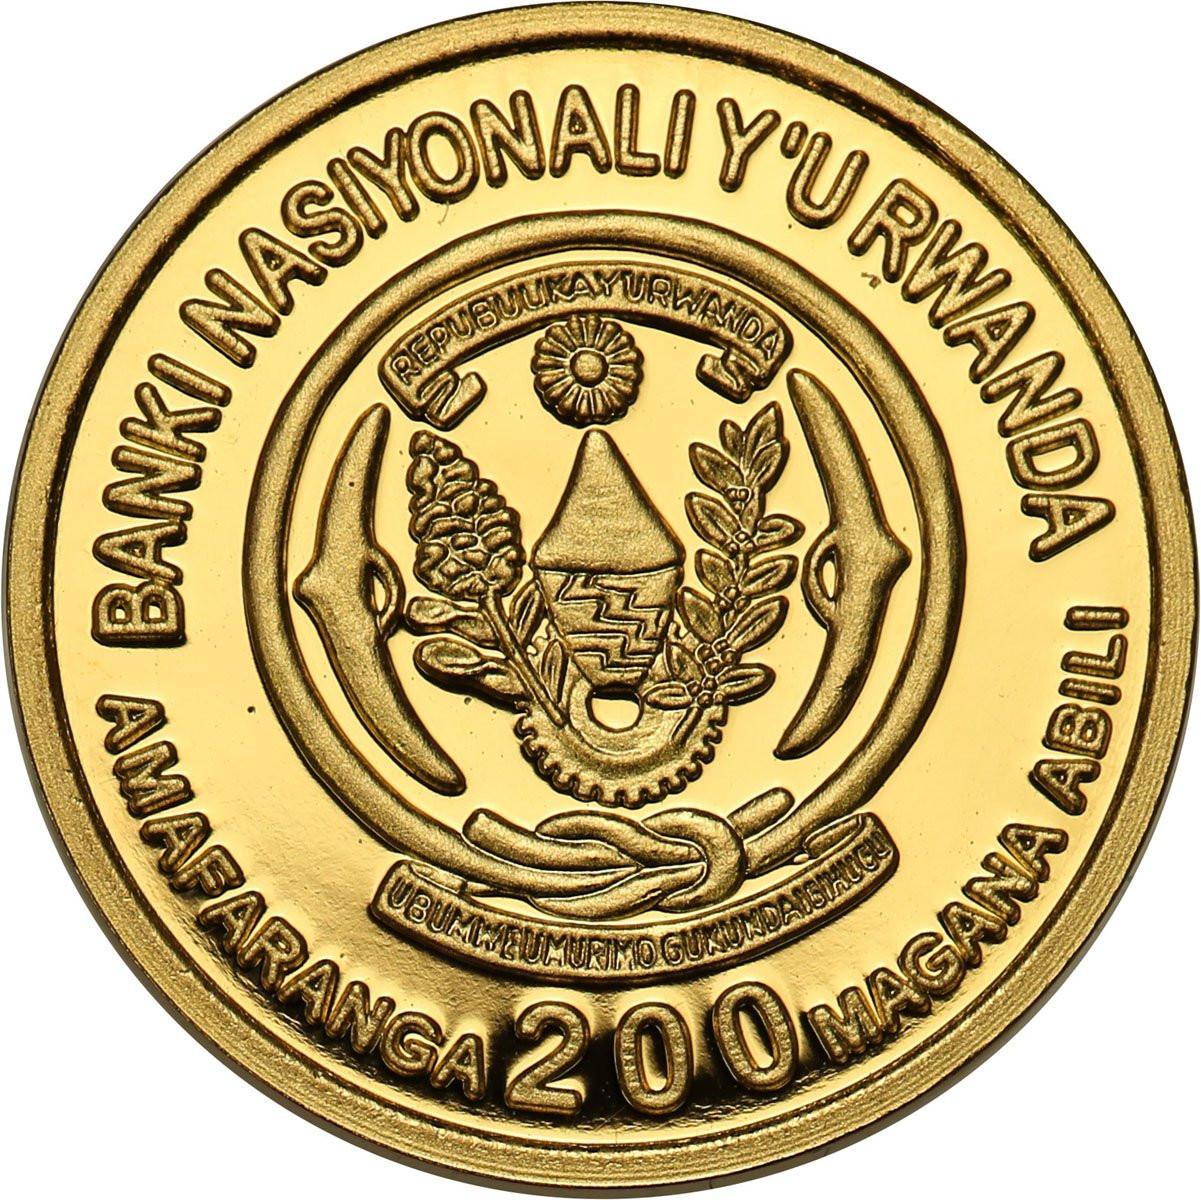 Republika Rwandy 200 franków 2007 Dian Fossey